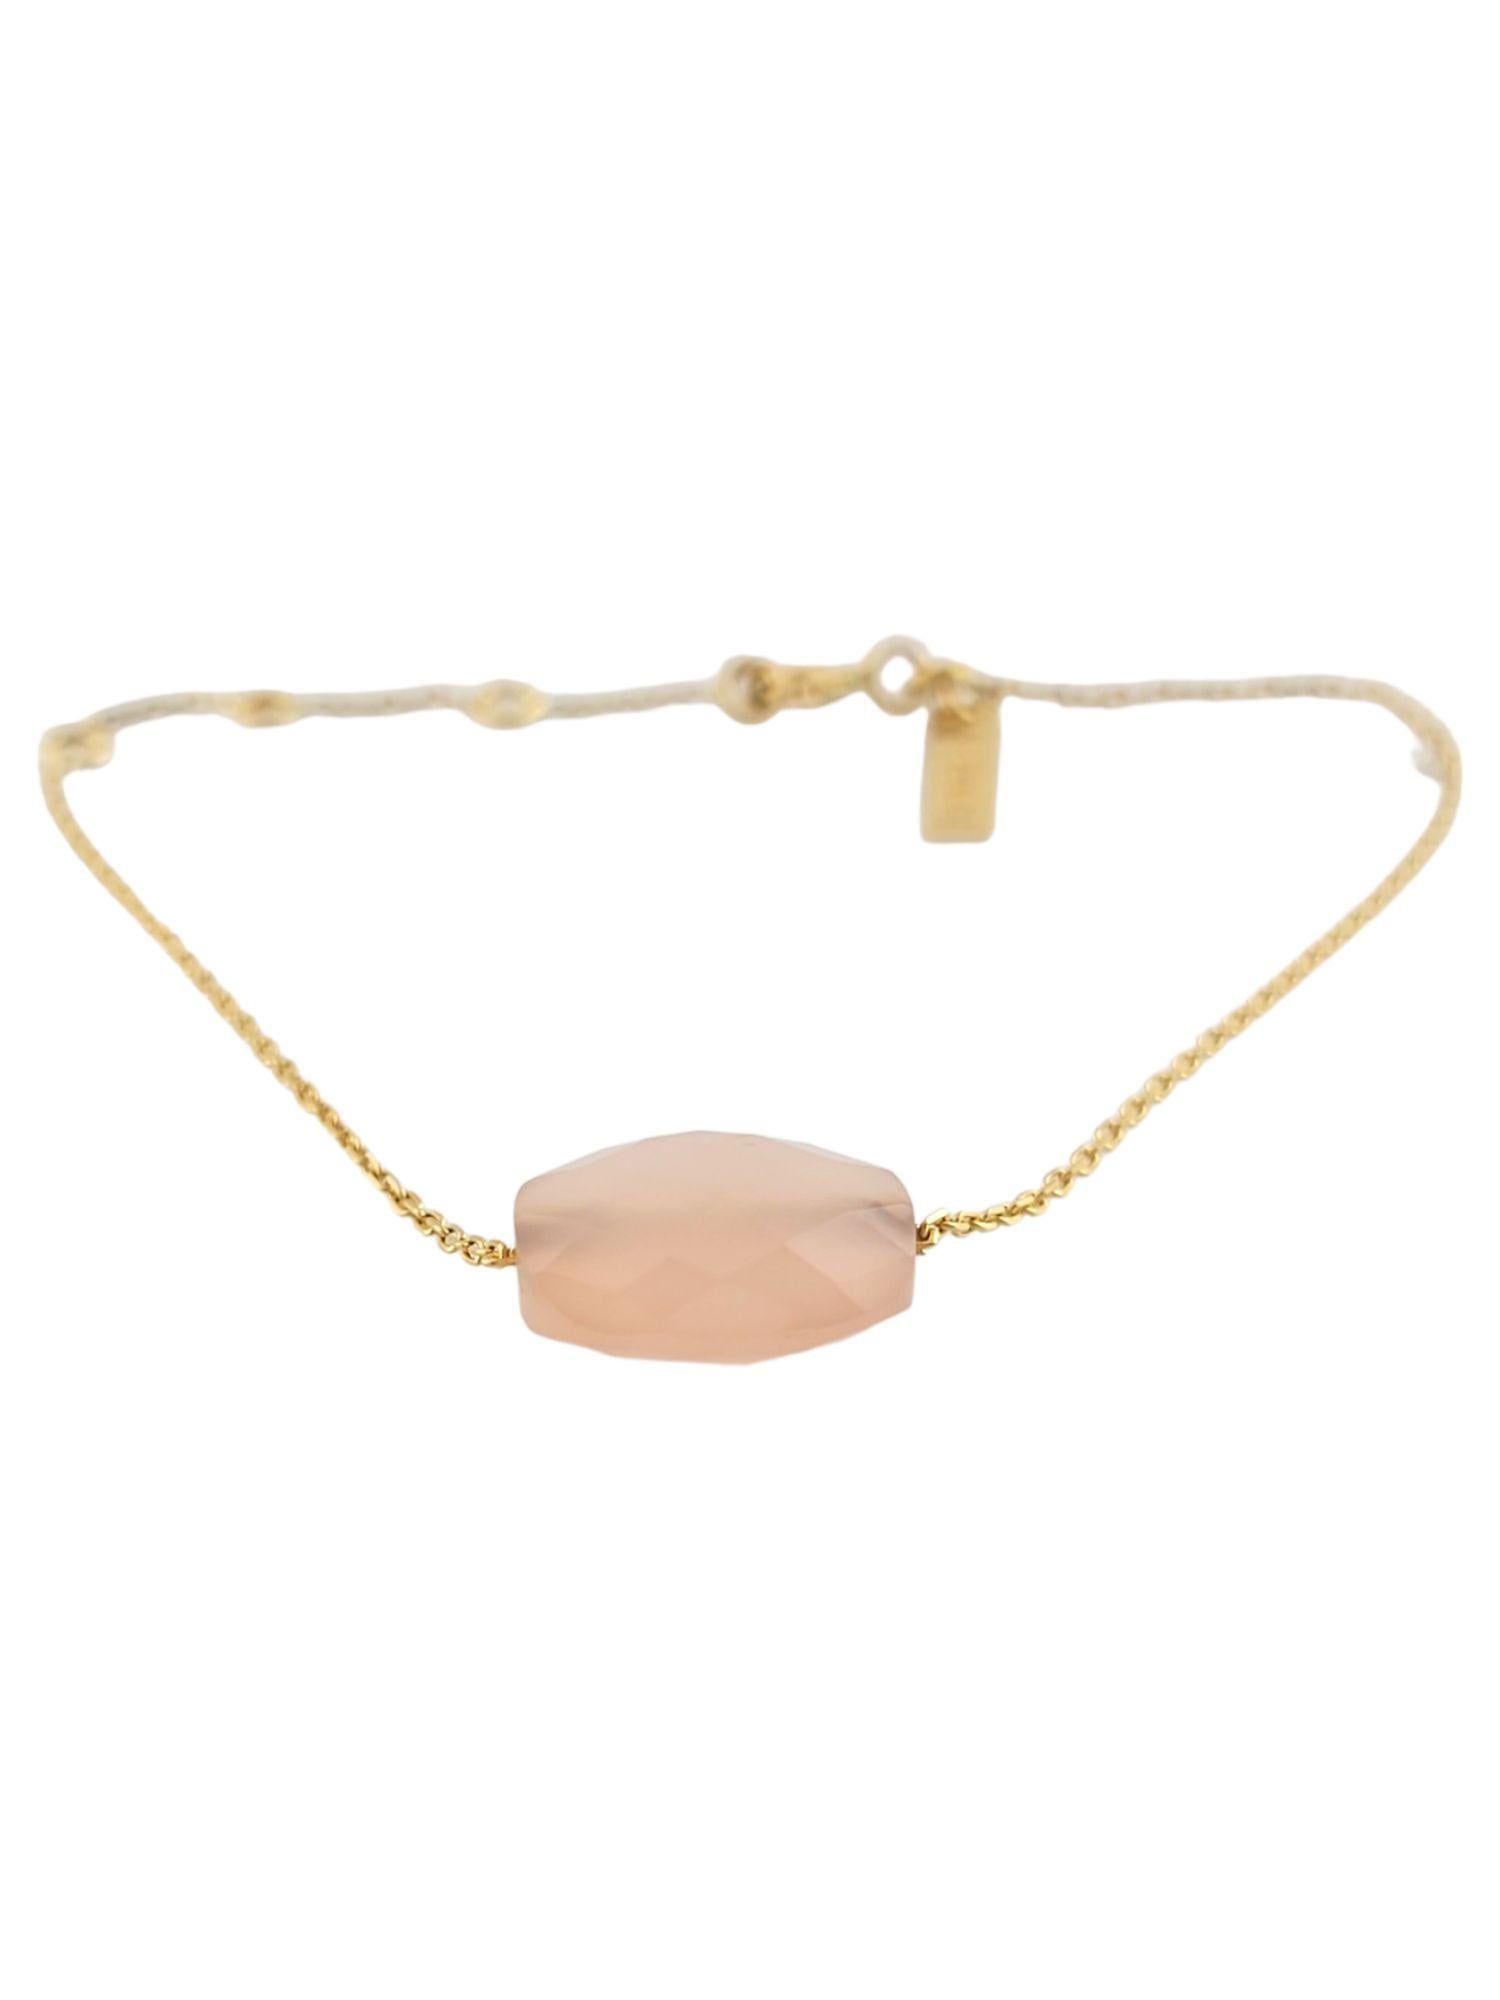 This beautiful 18K gold bracelet by Morganne Bello features a gorgeous guava quartz stone!

Size: 6 3/4